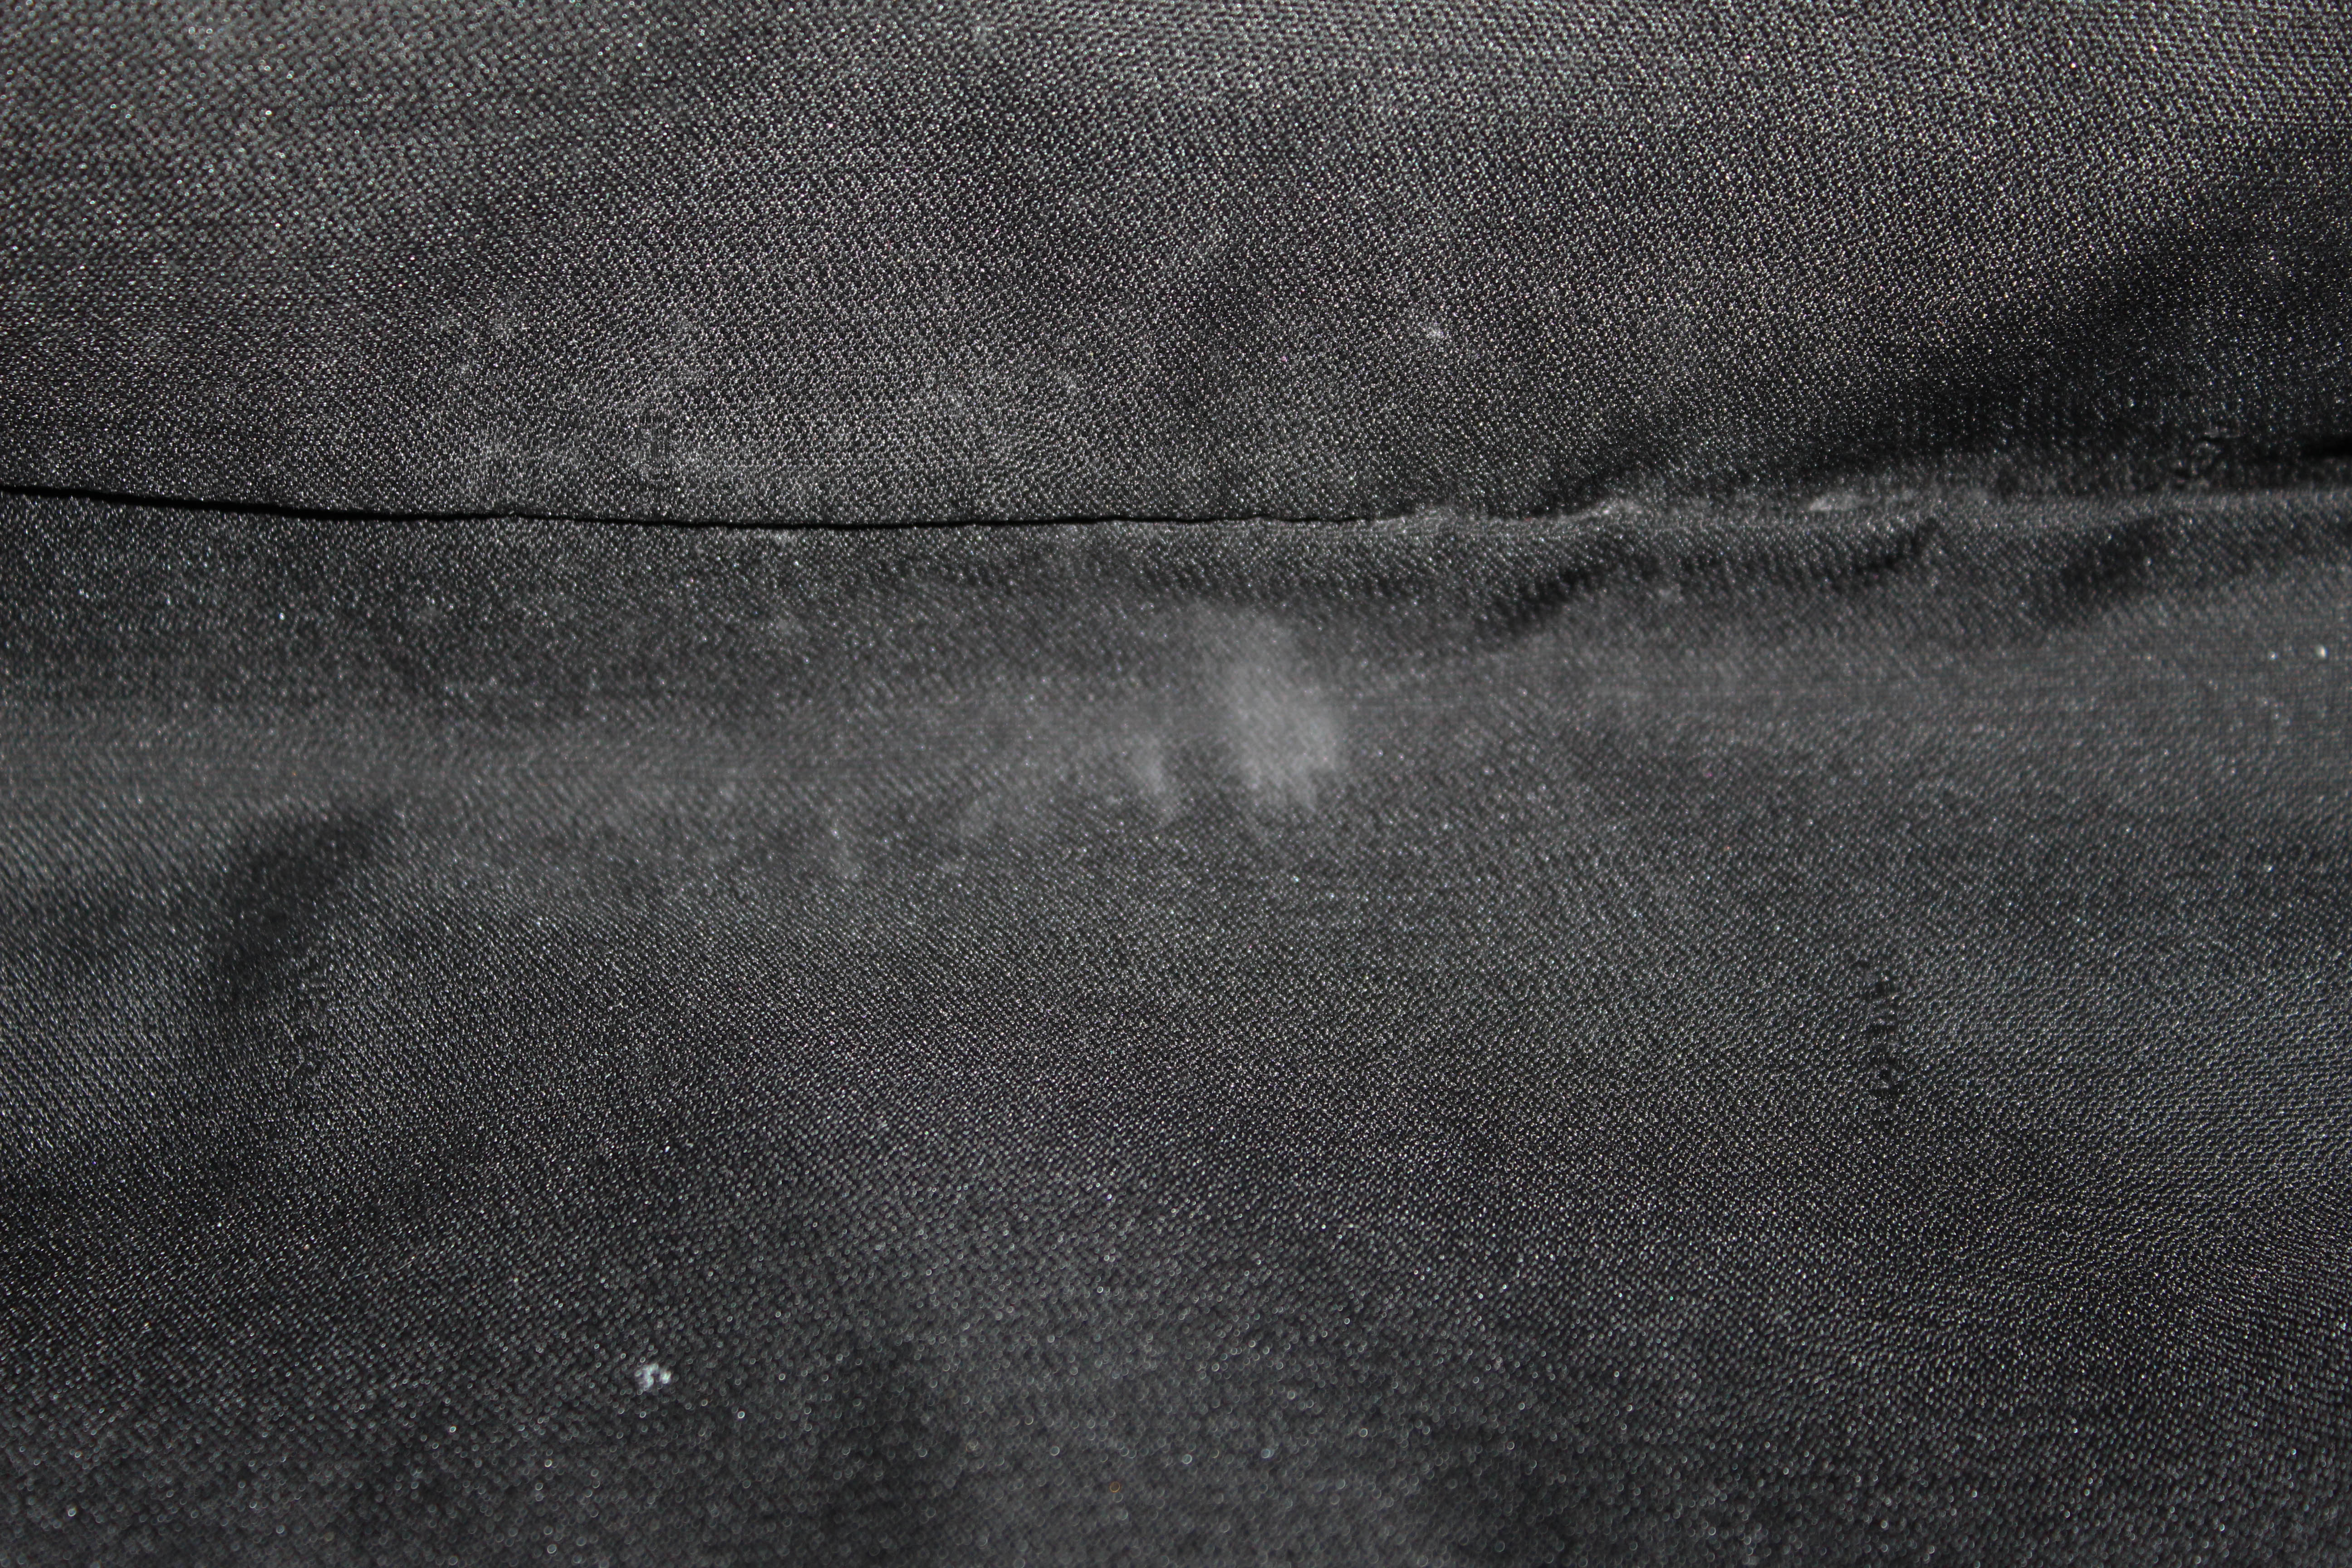 Authentic Fendi Black Suede Leather Medium Tote Shoulder Bag